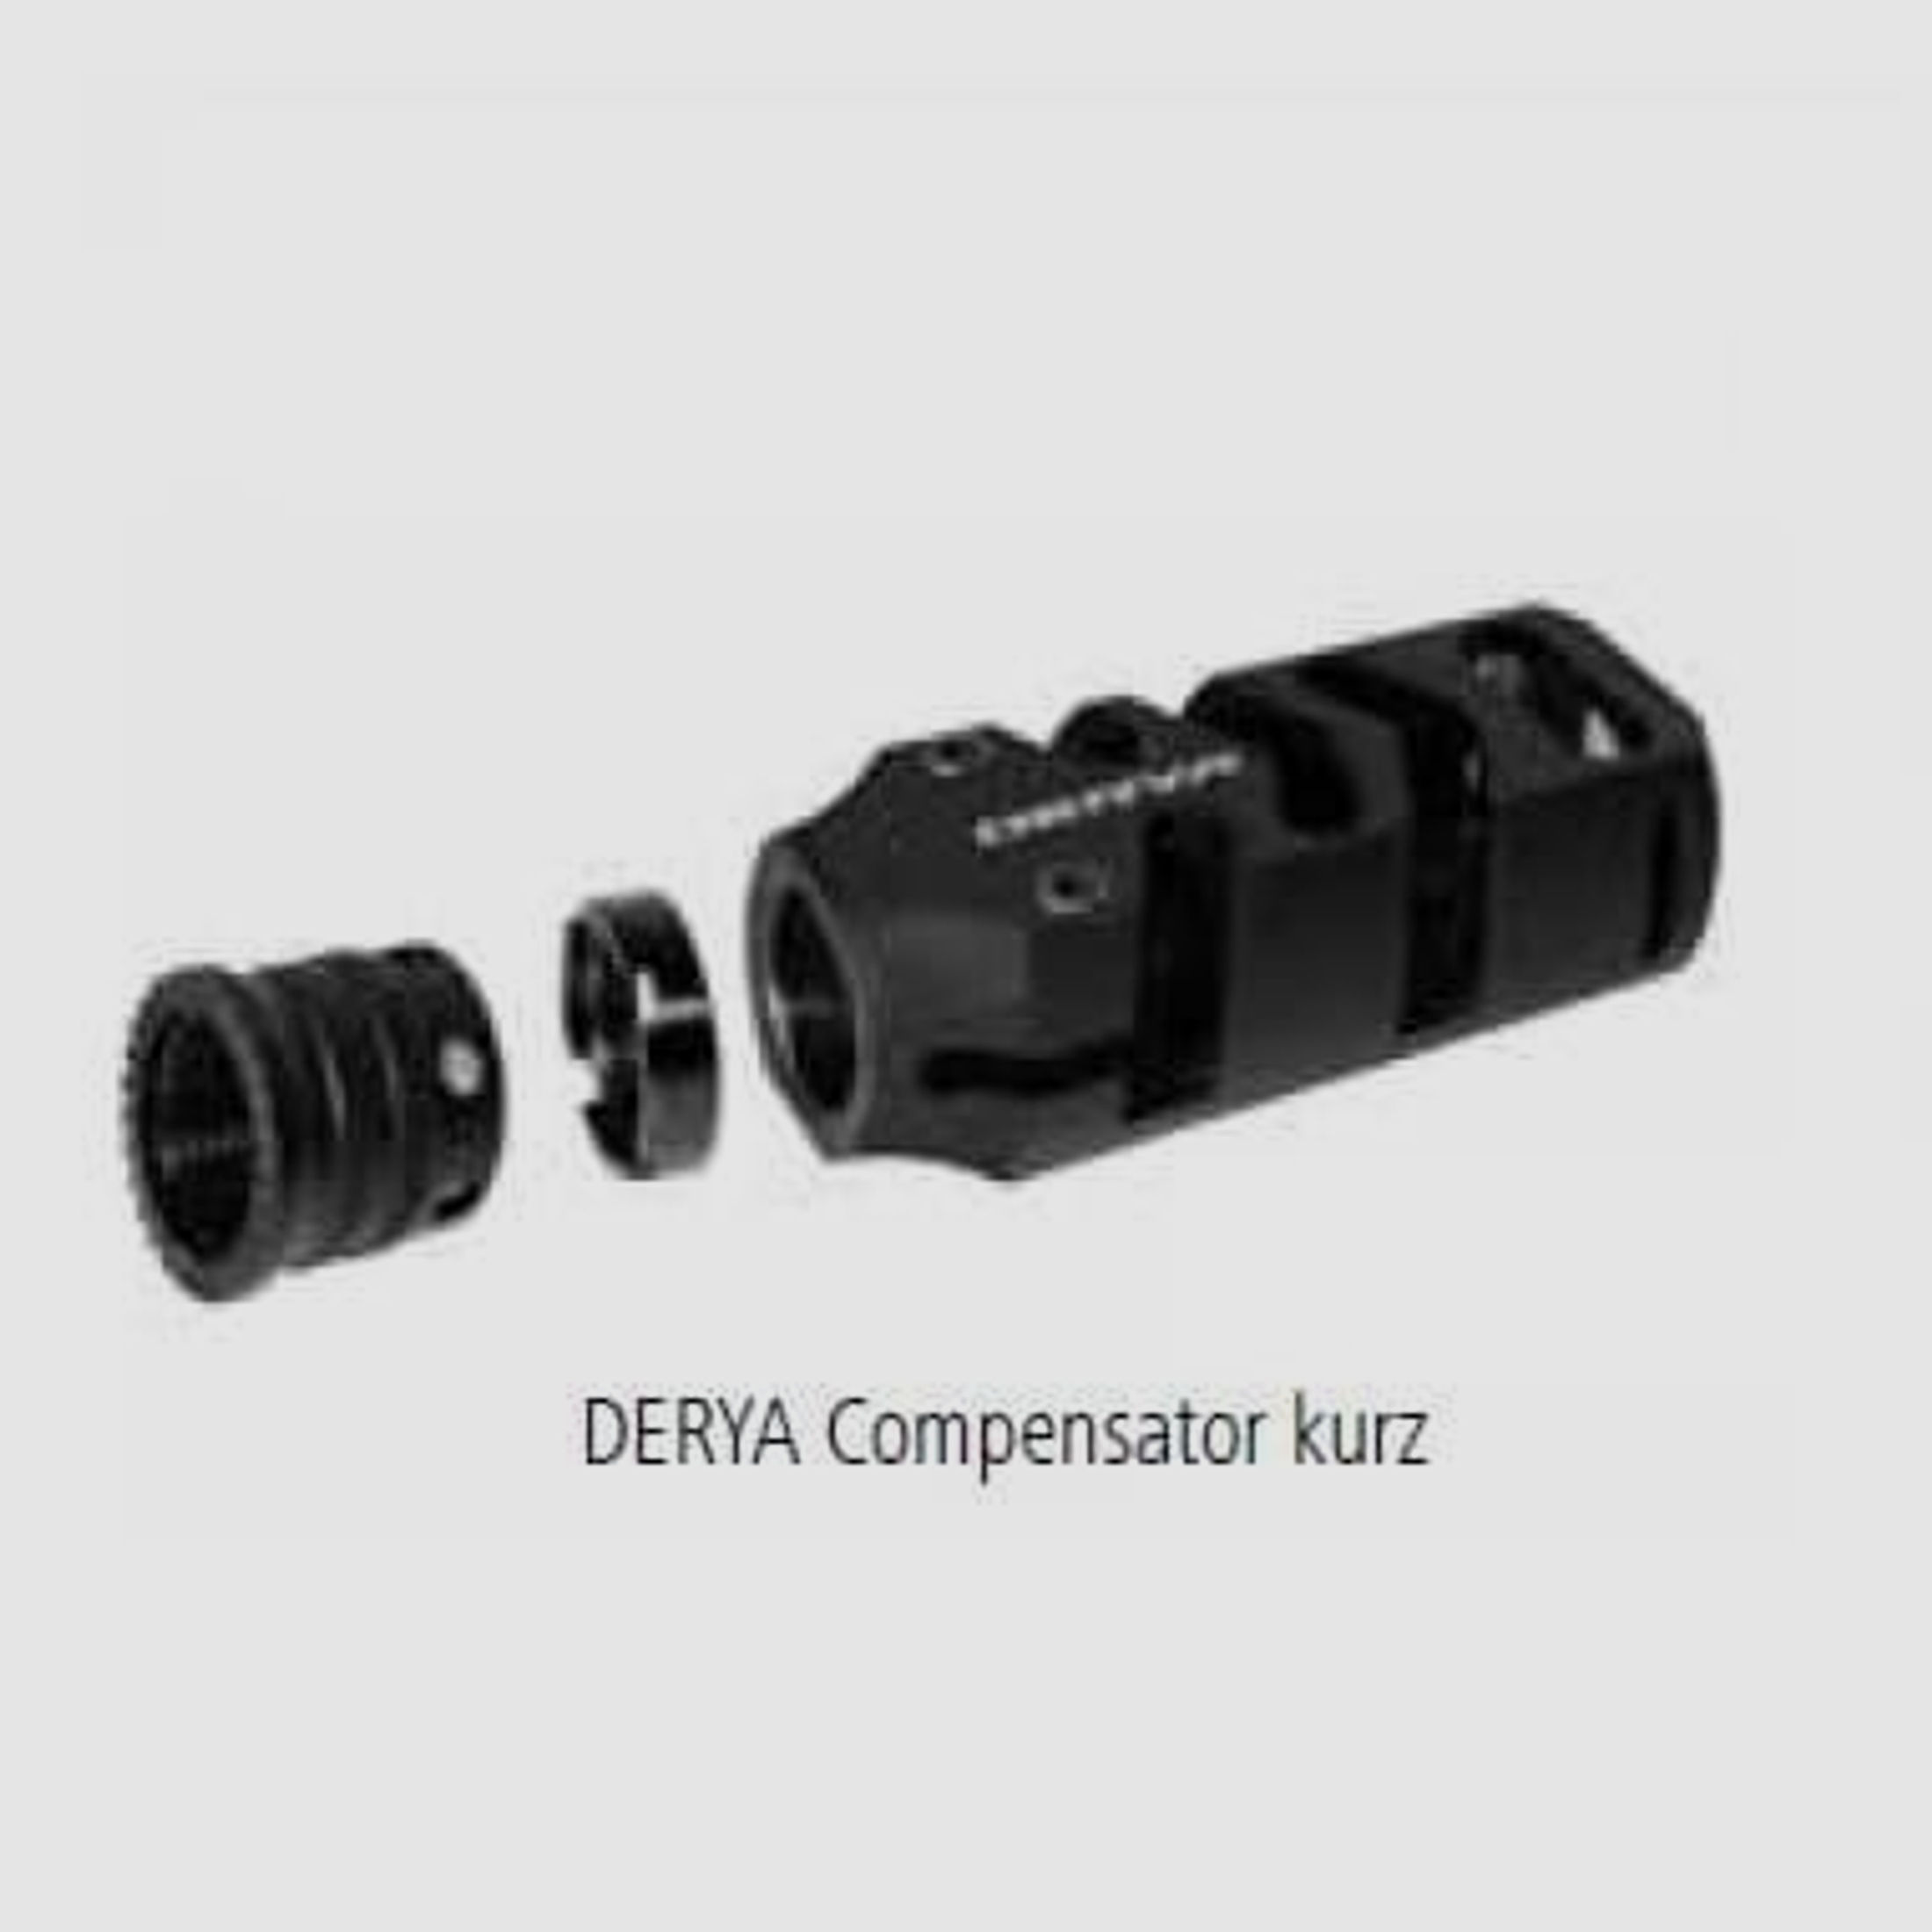 DERYA Arms Tuning/Ersatzteil f. Langwaffe Kompensator KURZ f. MK12  (9,5 cm lang)